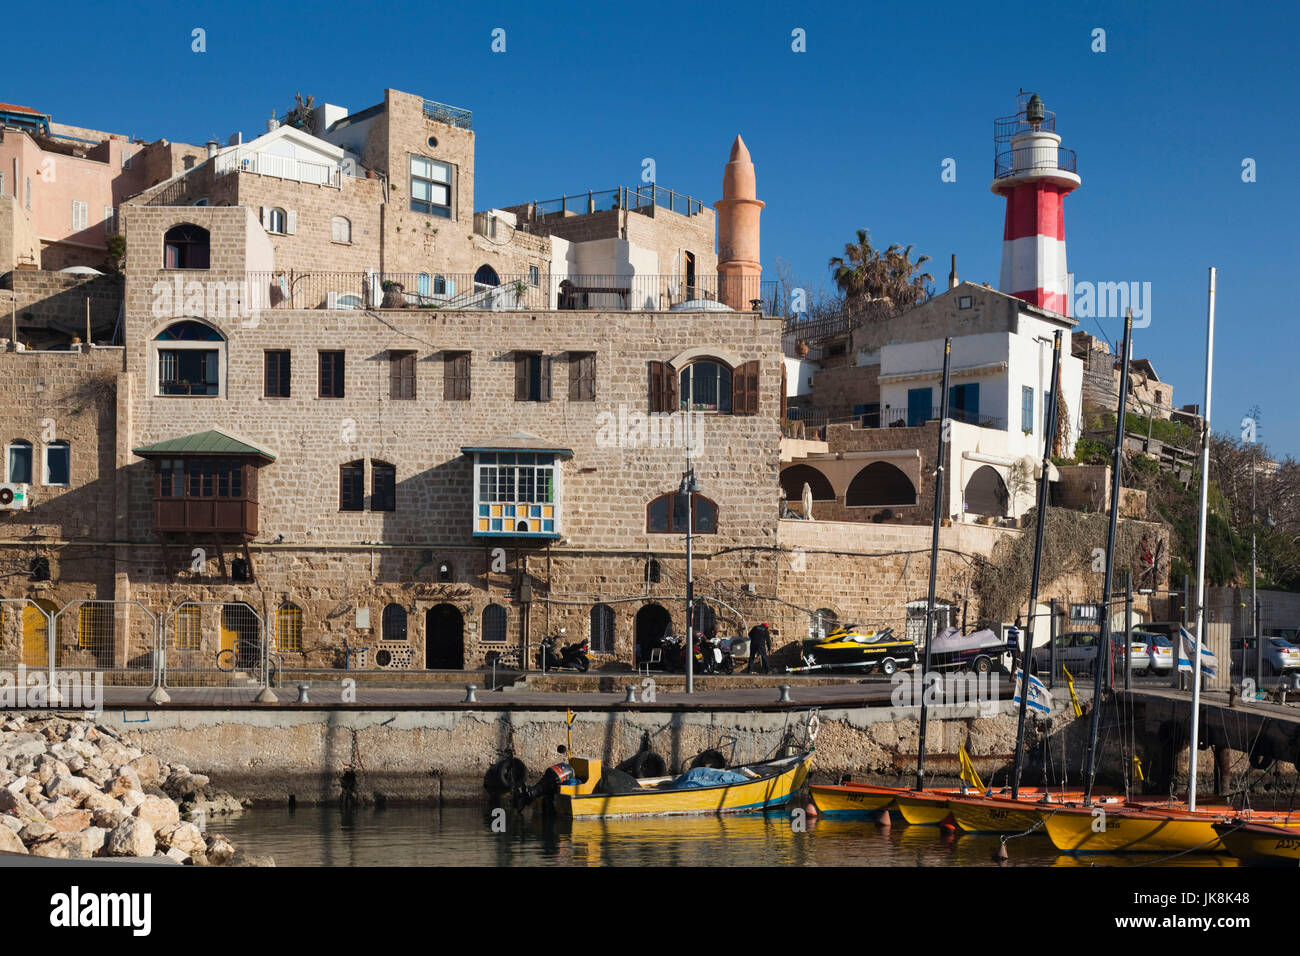 Israel, Tel Aviv, Jaffa, Jaffa Old Port Stock Photo